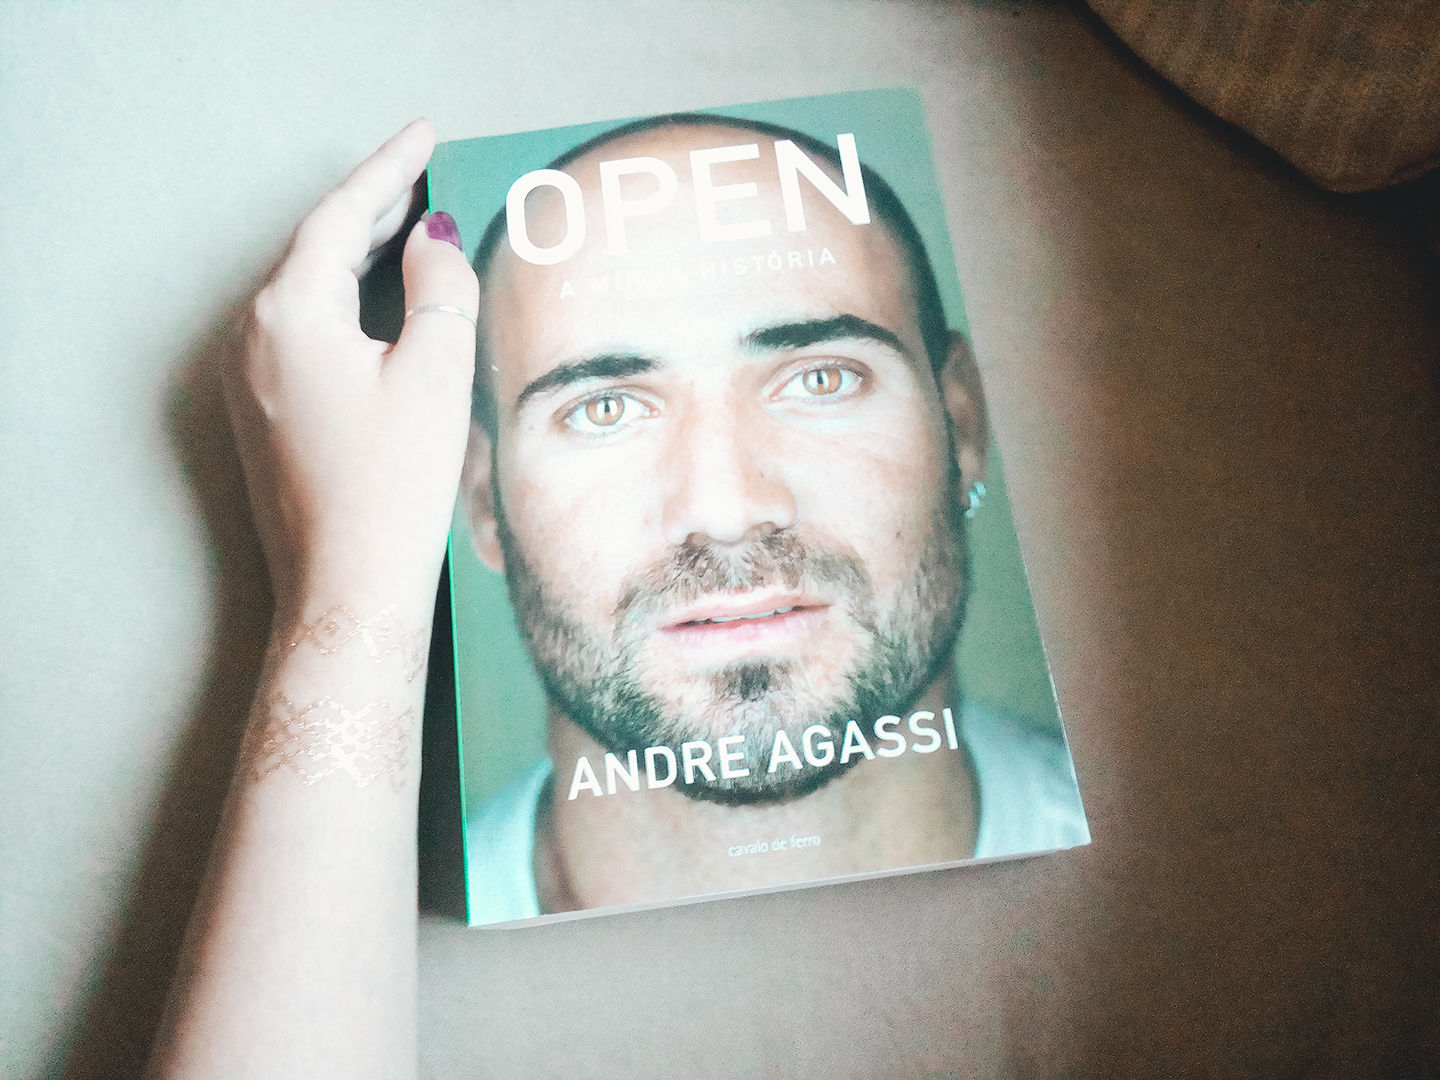 Open, de Andre Agassi